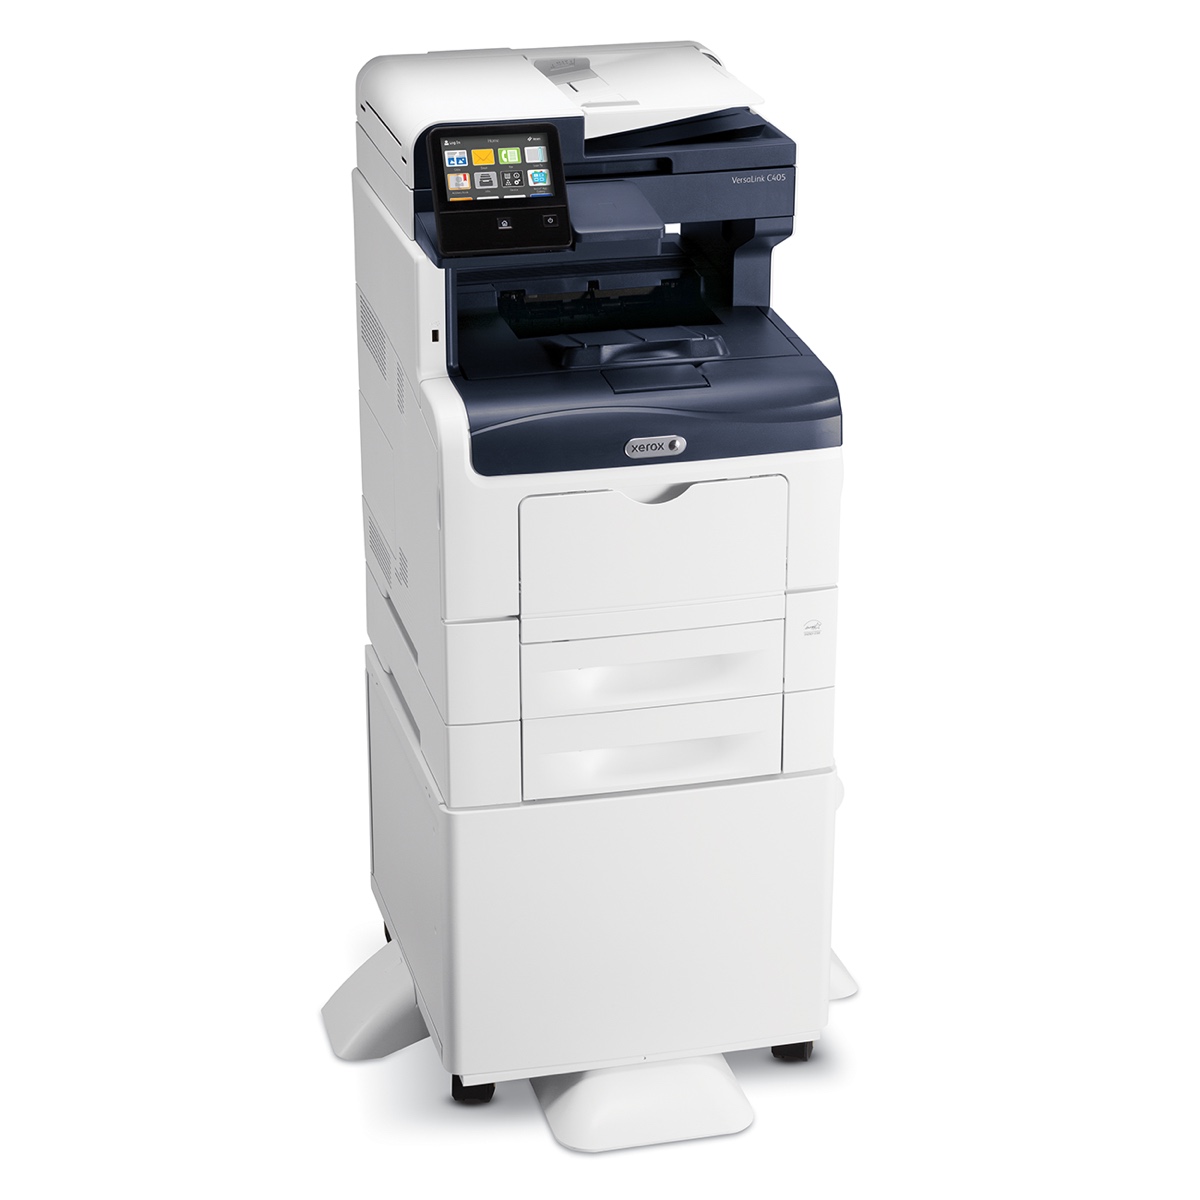 Xerox Copiers:  The Xerox VersaLink C405/DN Copier